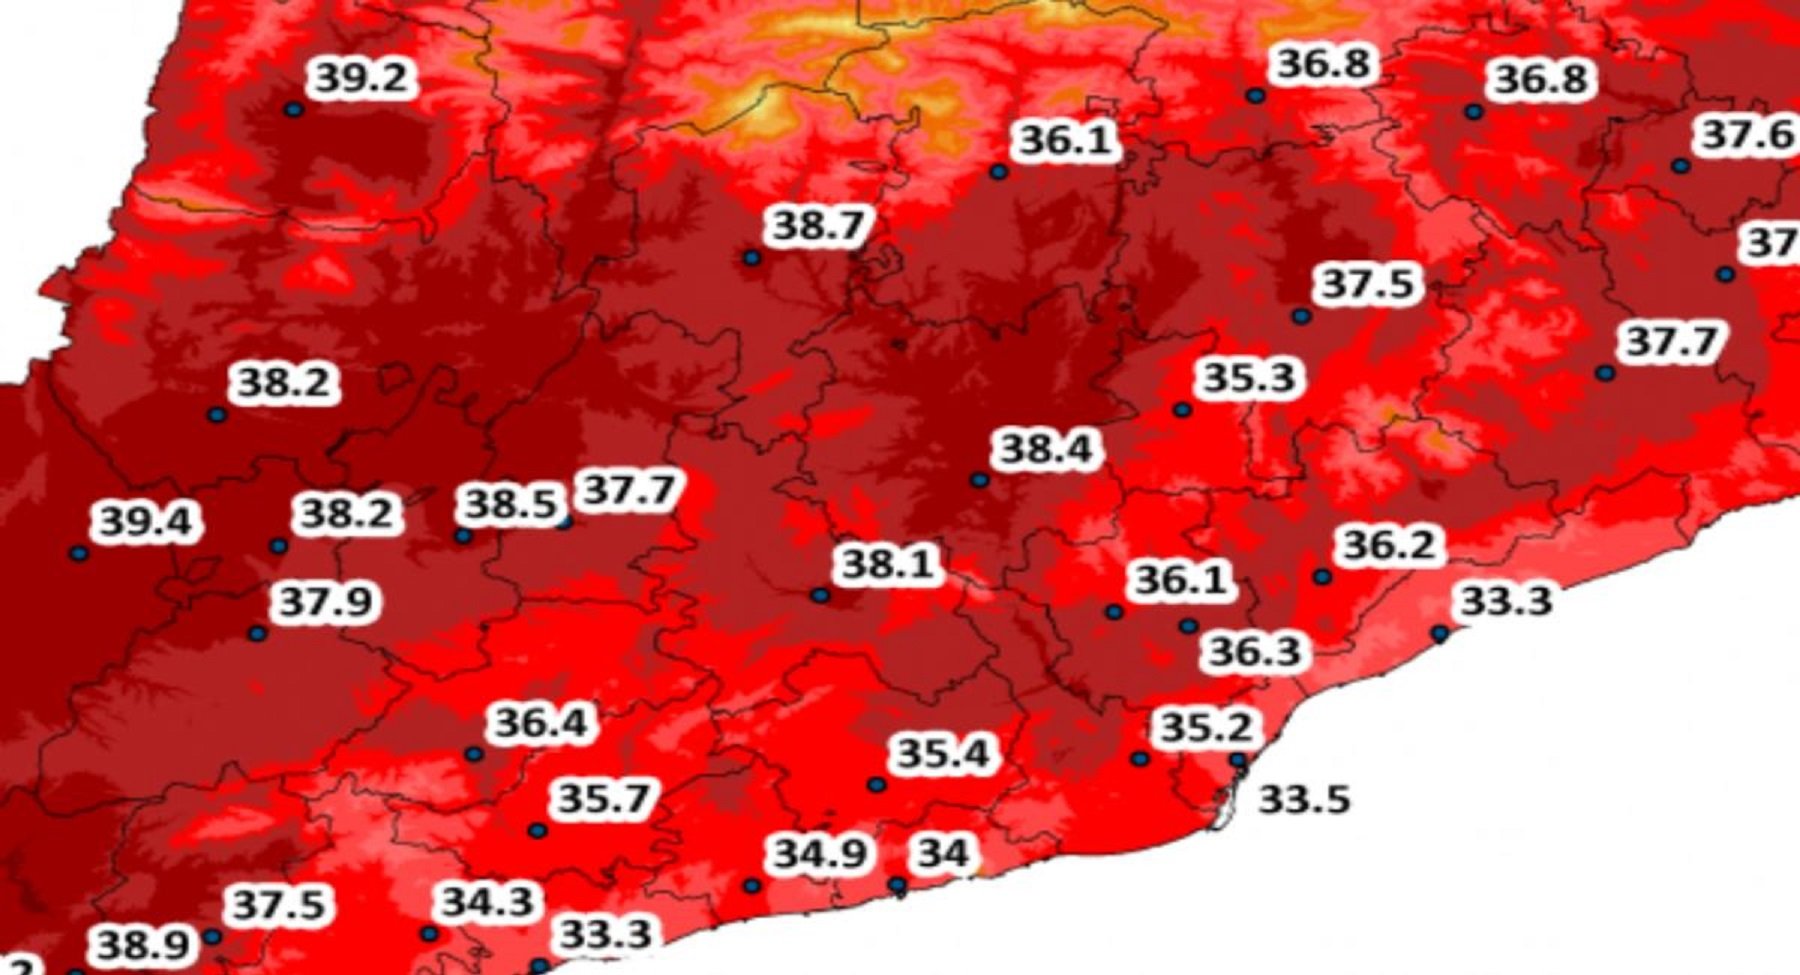 Alerta en Catalunya por calor extremo: los termómetros pueden llegar a los 40 grados